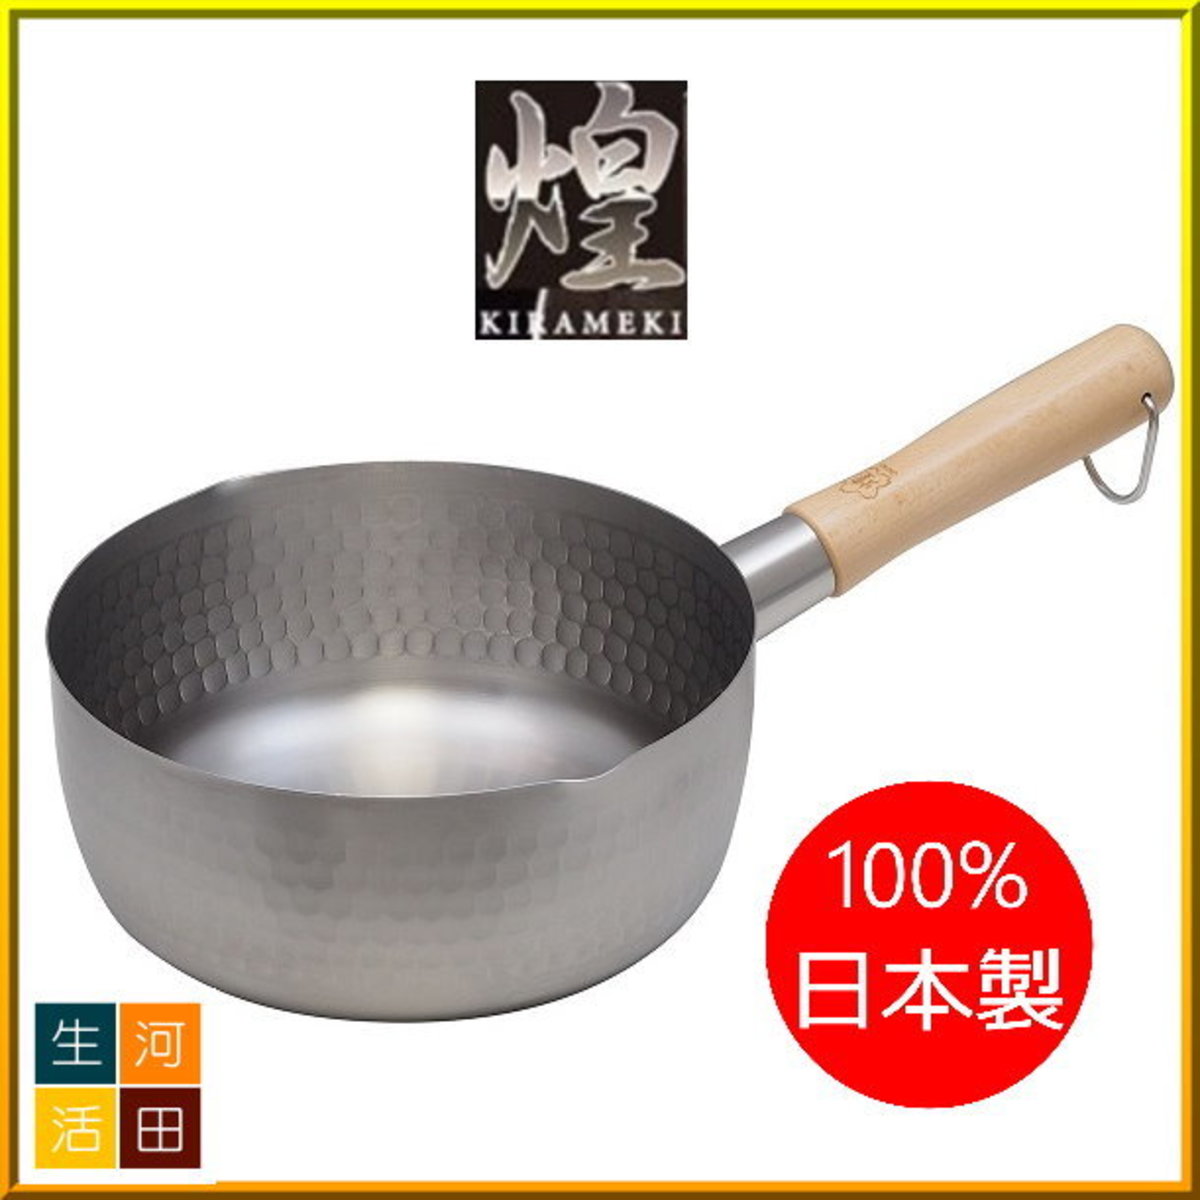 [日本製造] 煌雪平鍋 18cm |烹飪鍋 |煮食鍋 